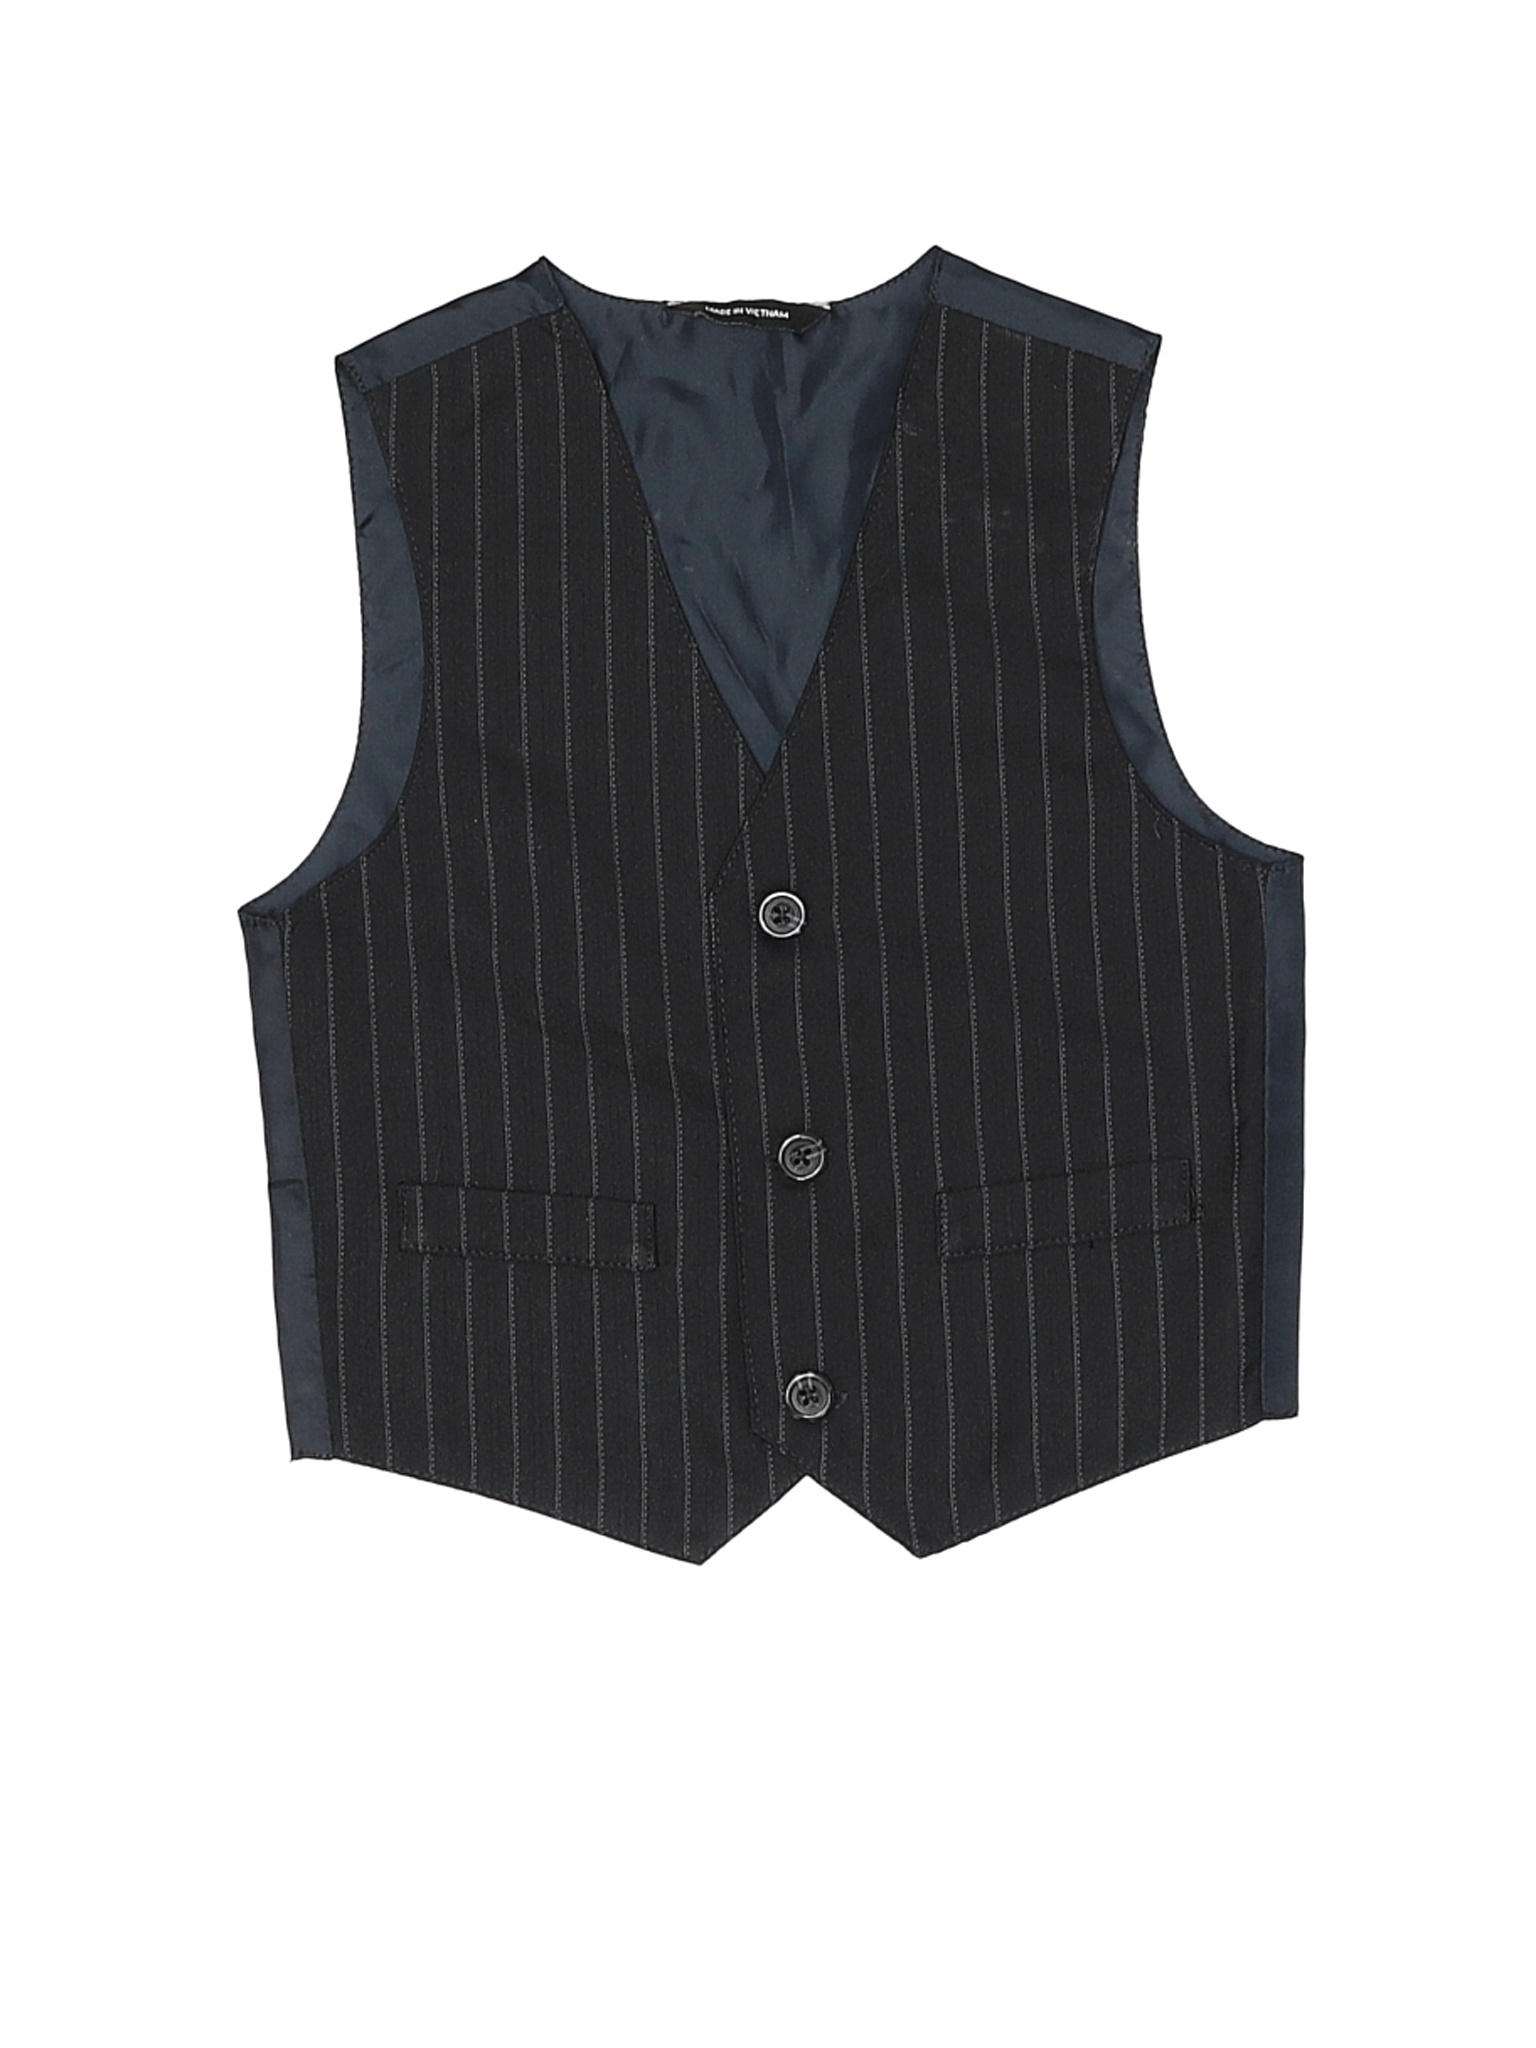 Unbranded Boys Black Tuxedo Vest 2T | eBay